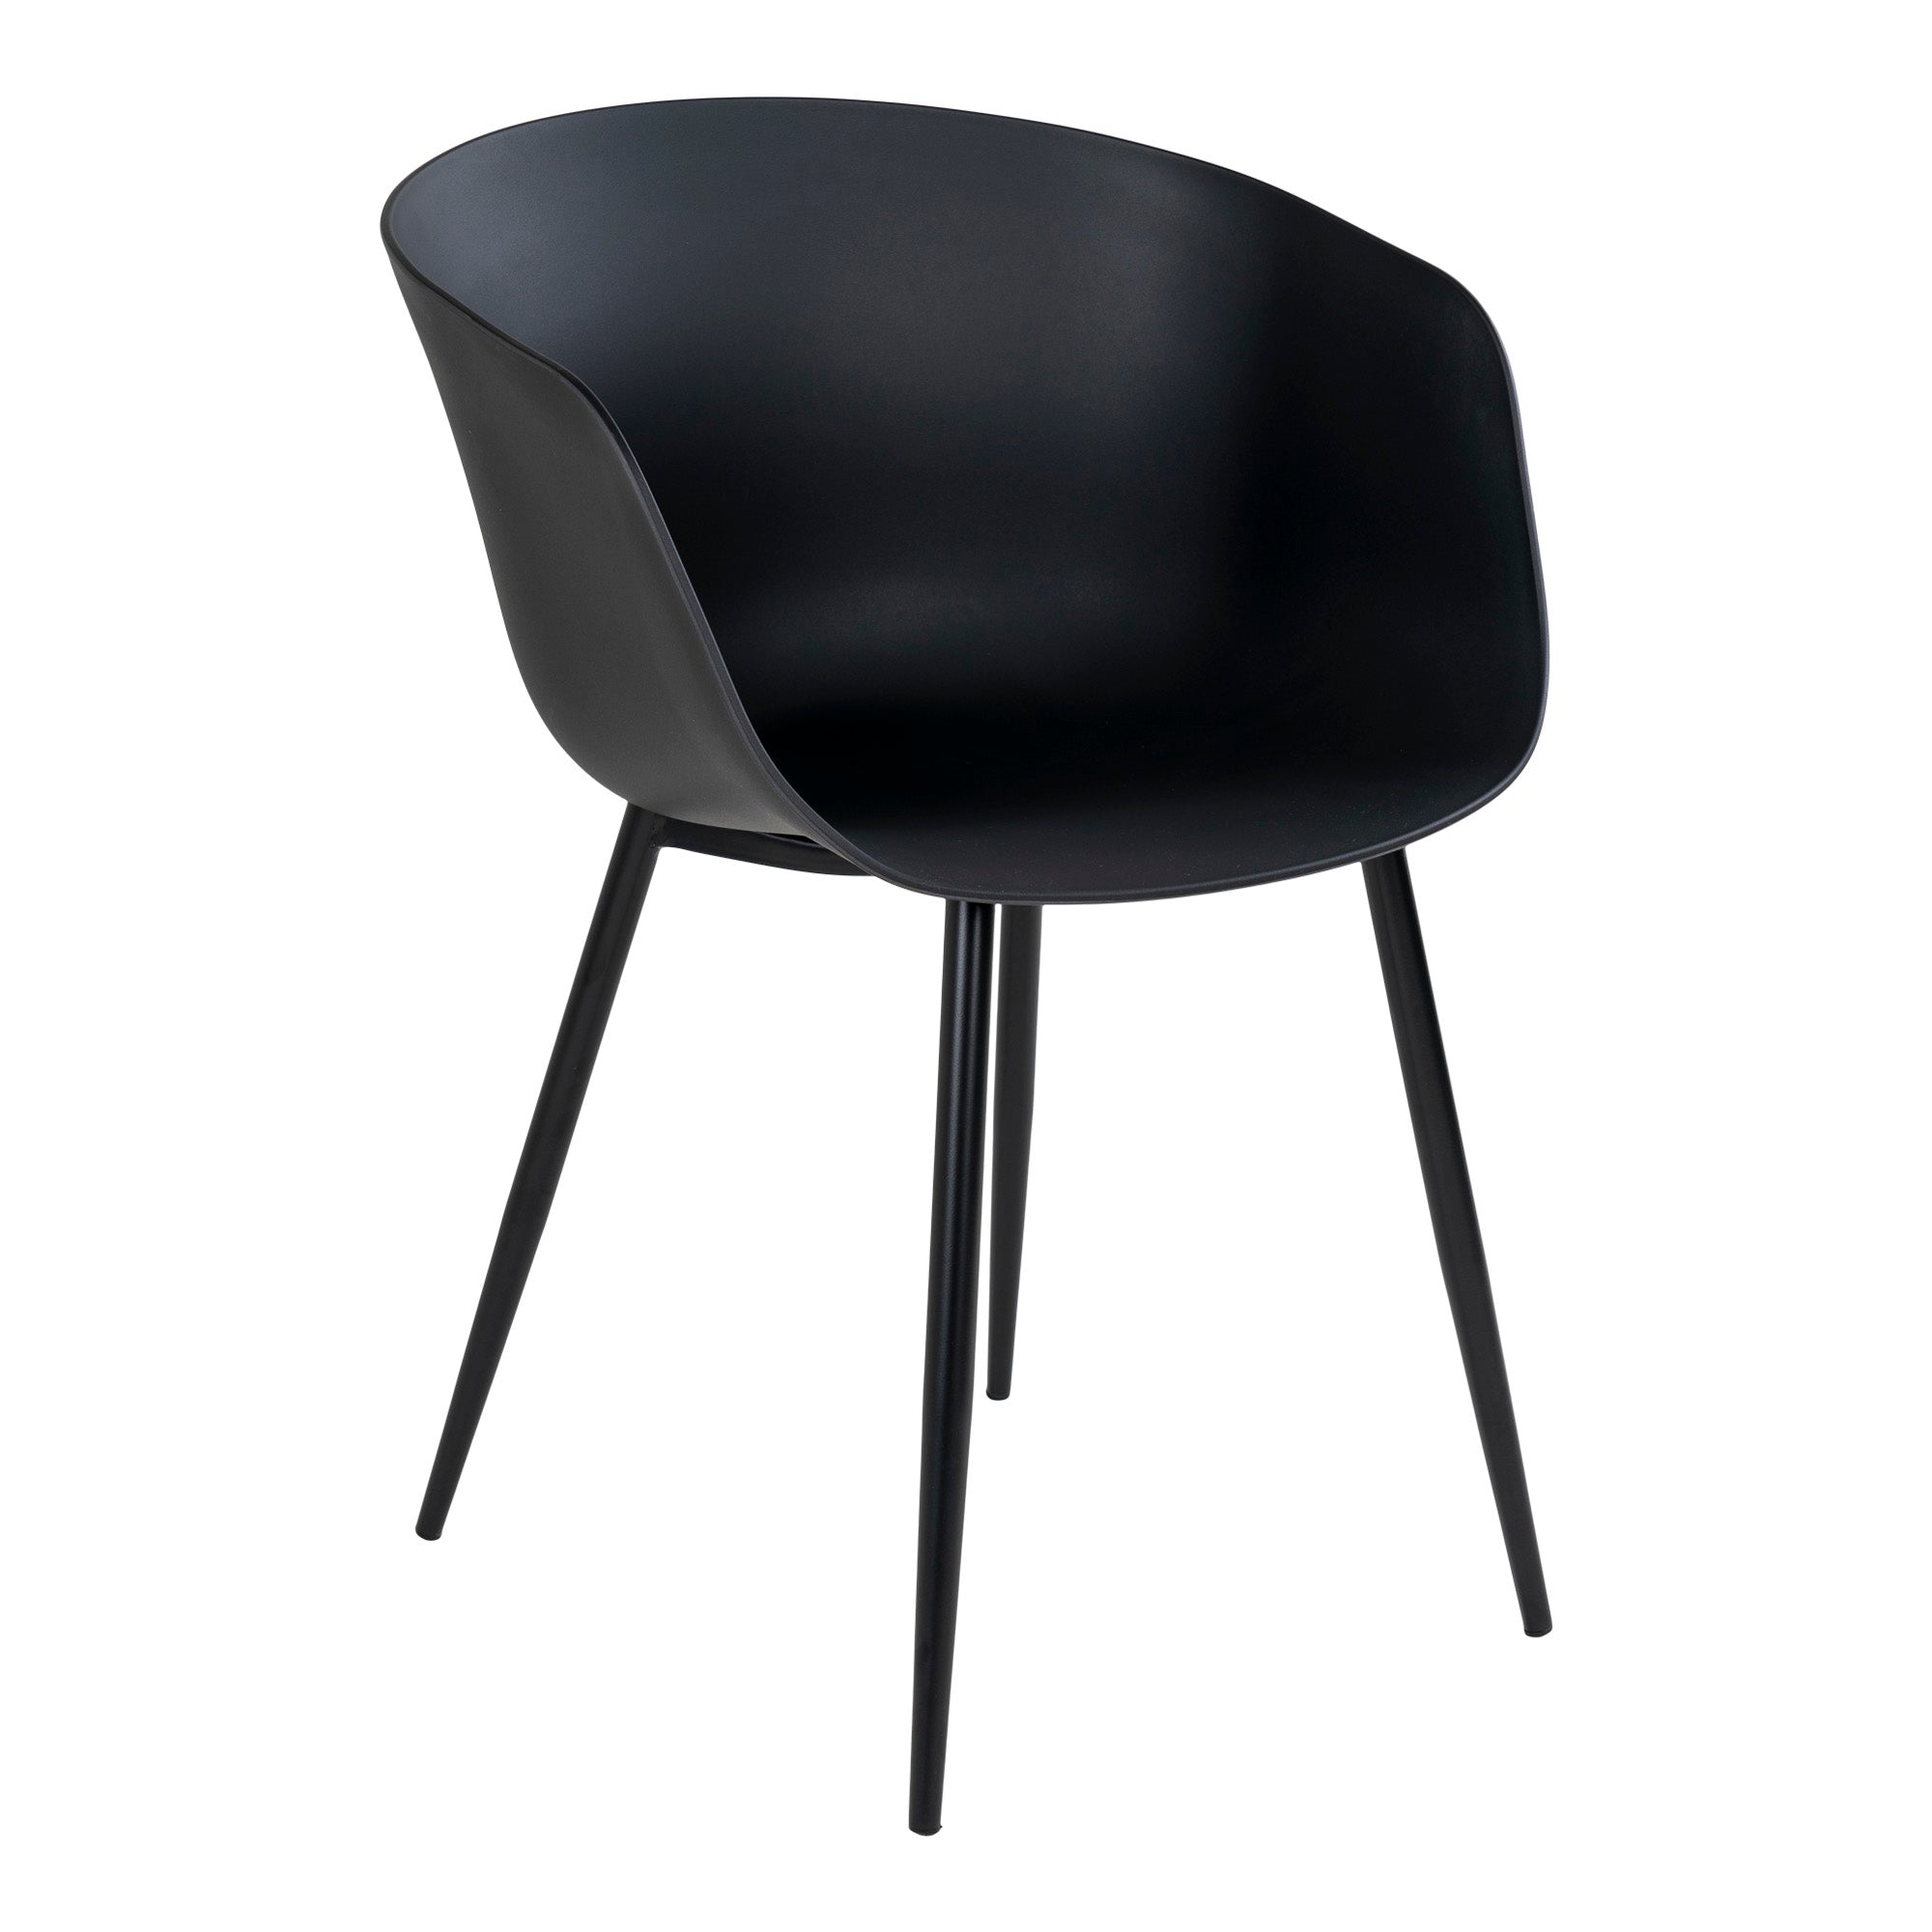 Roda Spisebordsstol - Spisebordsstol, Sort Med Sorte Ben ⎮ Sæt af 2 stk. ⎮ 5713917003914 ⎮ 7001125 